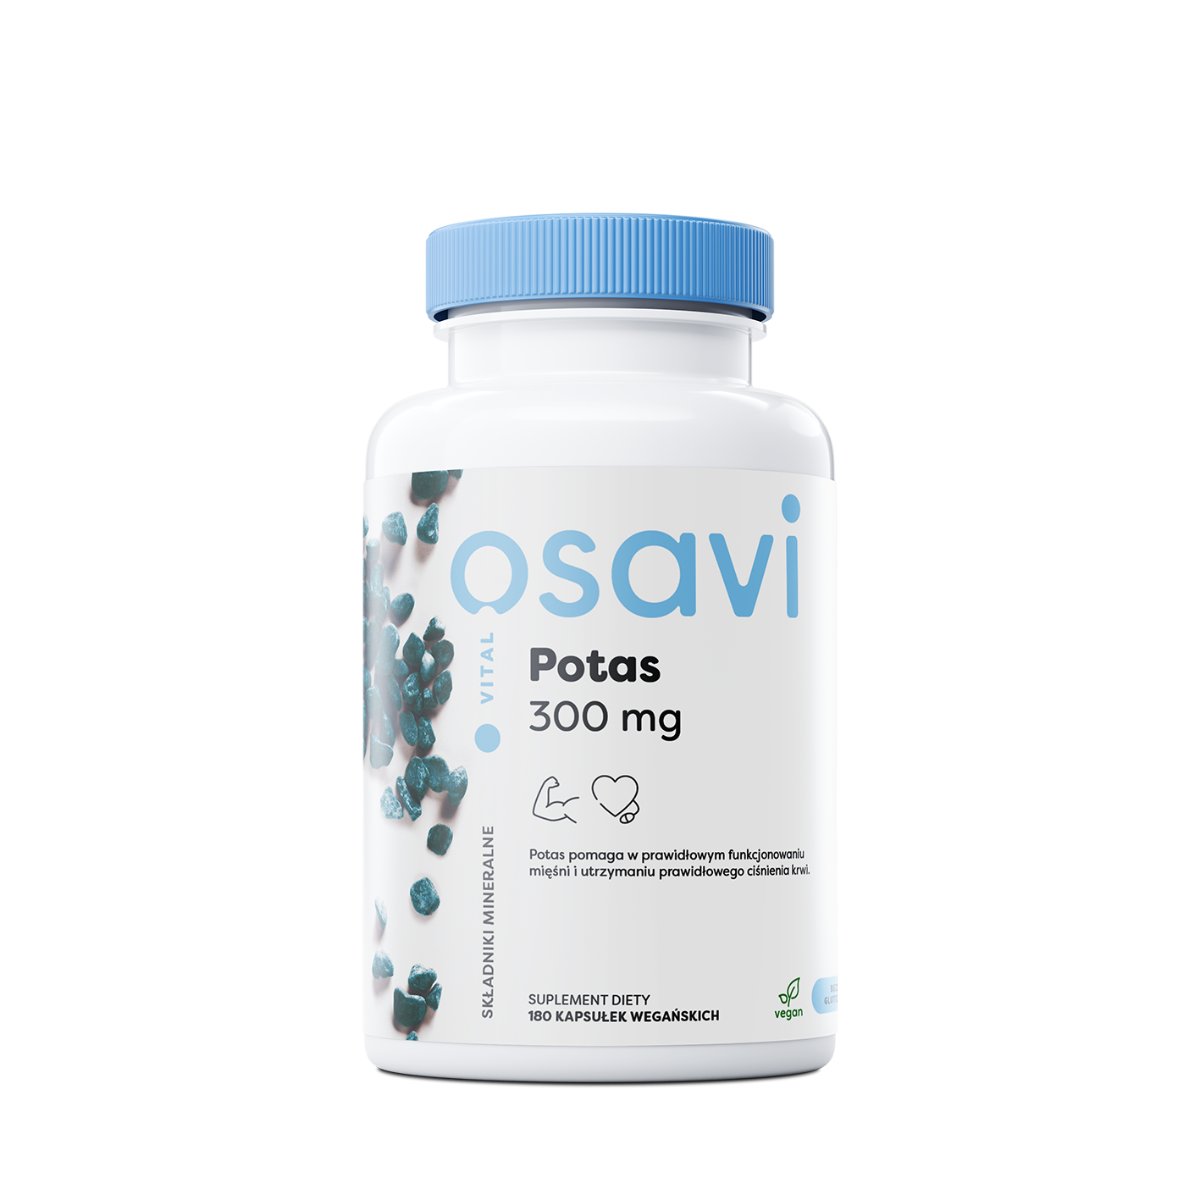 OSAVI Potas 300mg (Wsparcie mięśni, prawidłowego ciśnienia krwi) 180 Kapsułek wegańskich